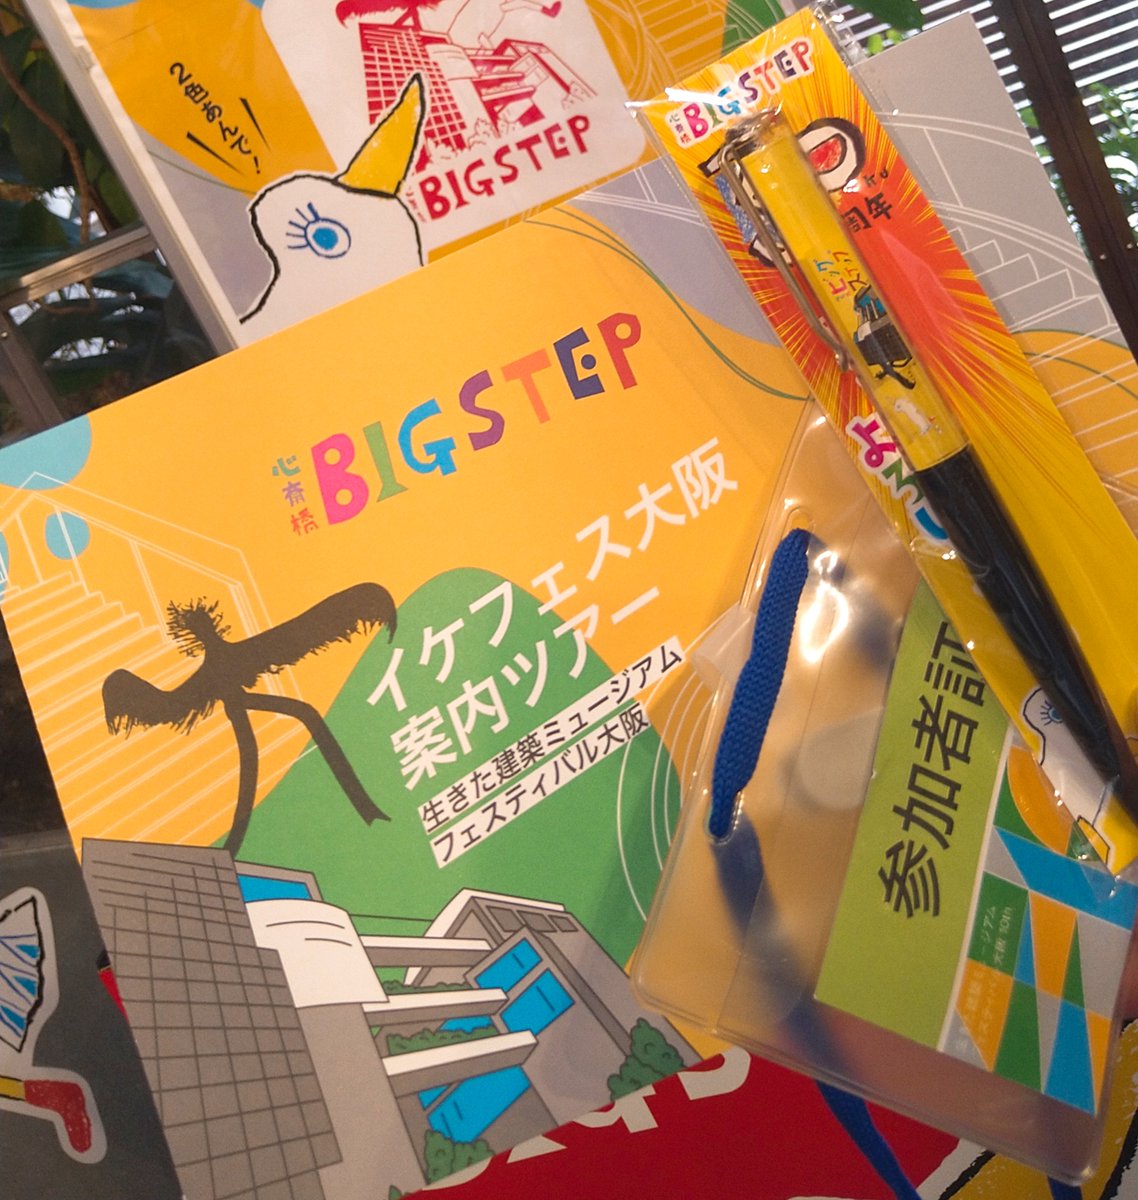 イケフェス大阪2023、1つめはBIG STEPのガイドツアー参加しましたー!

#イケフェス大阪2023 